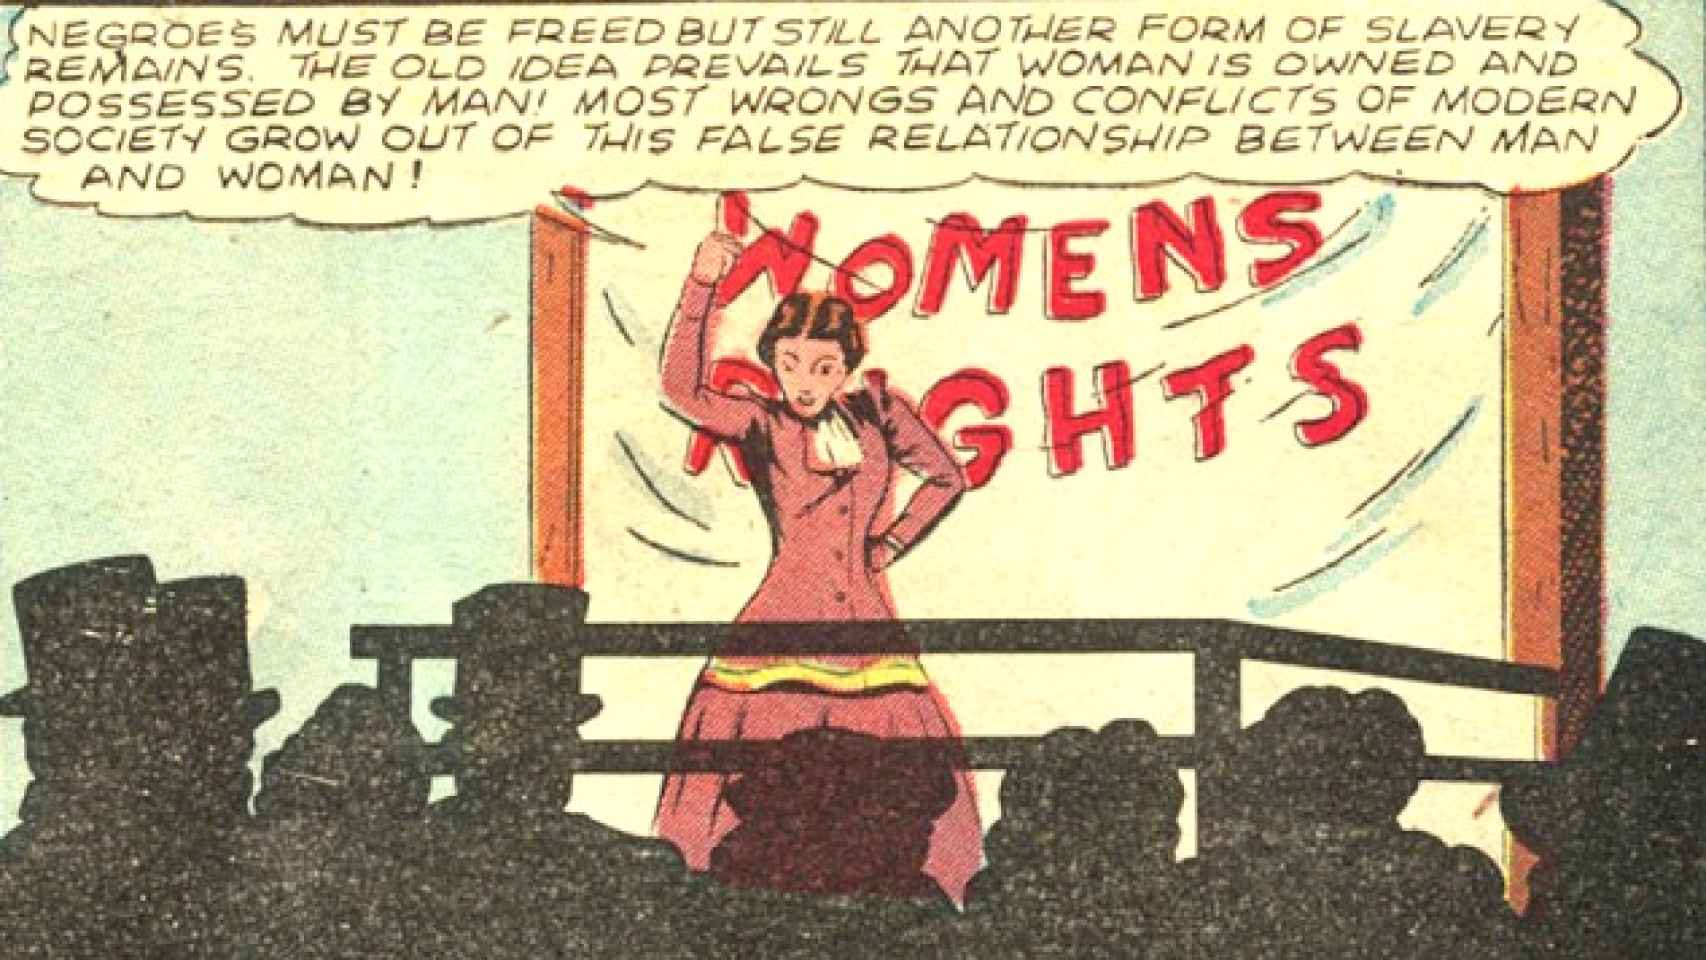 Wonder Women dedicado a la sugragista Susan B. Anthony.